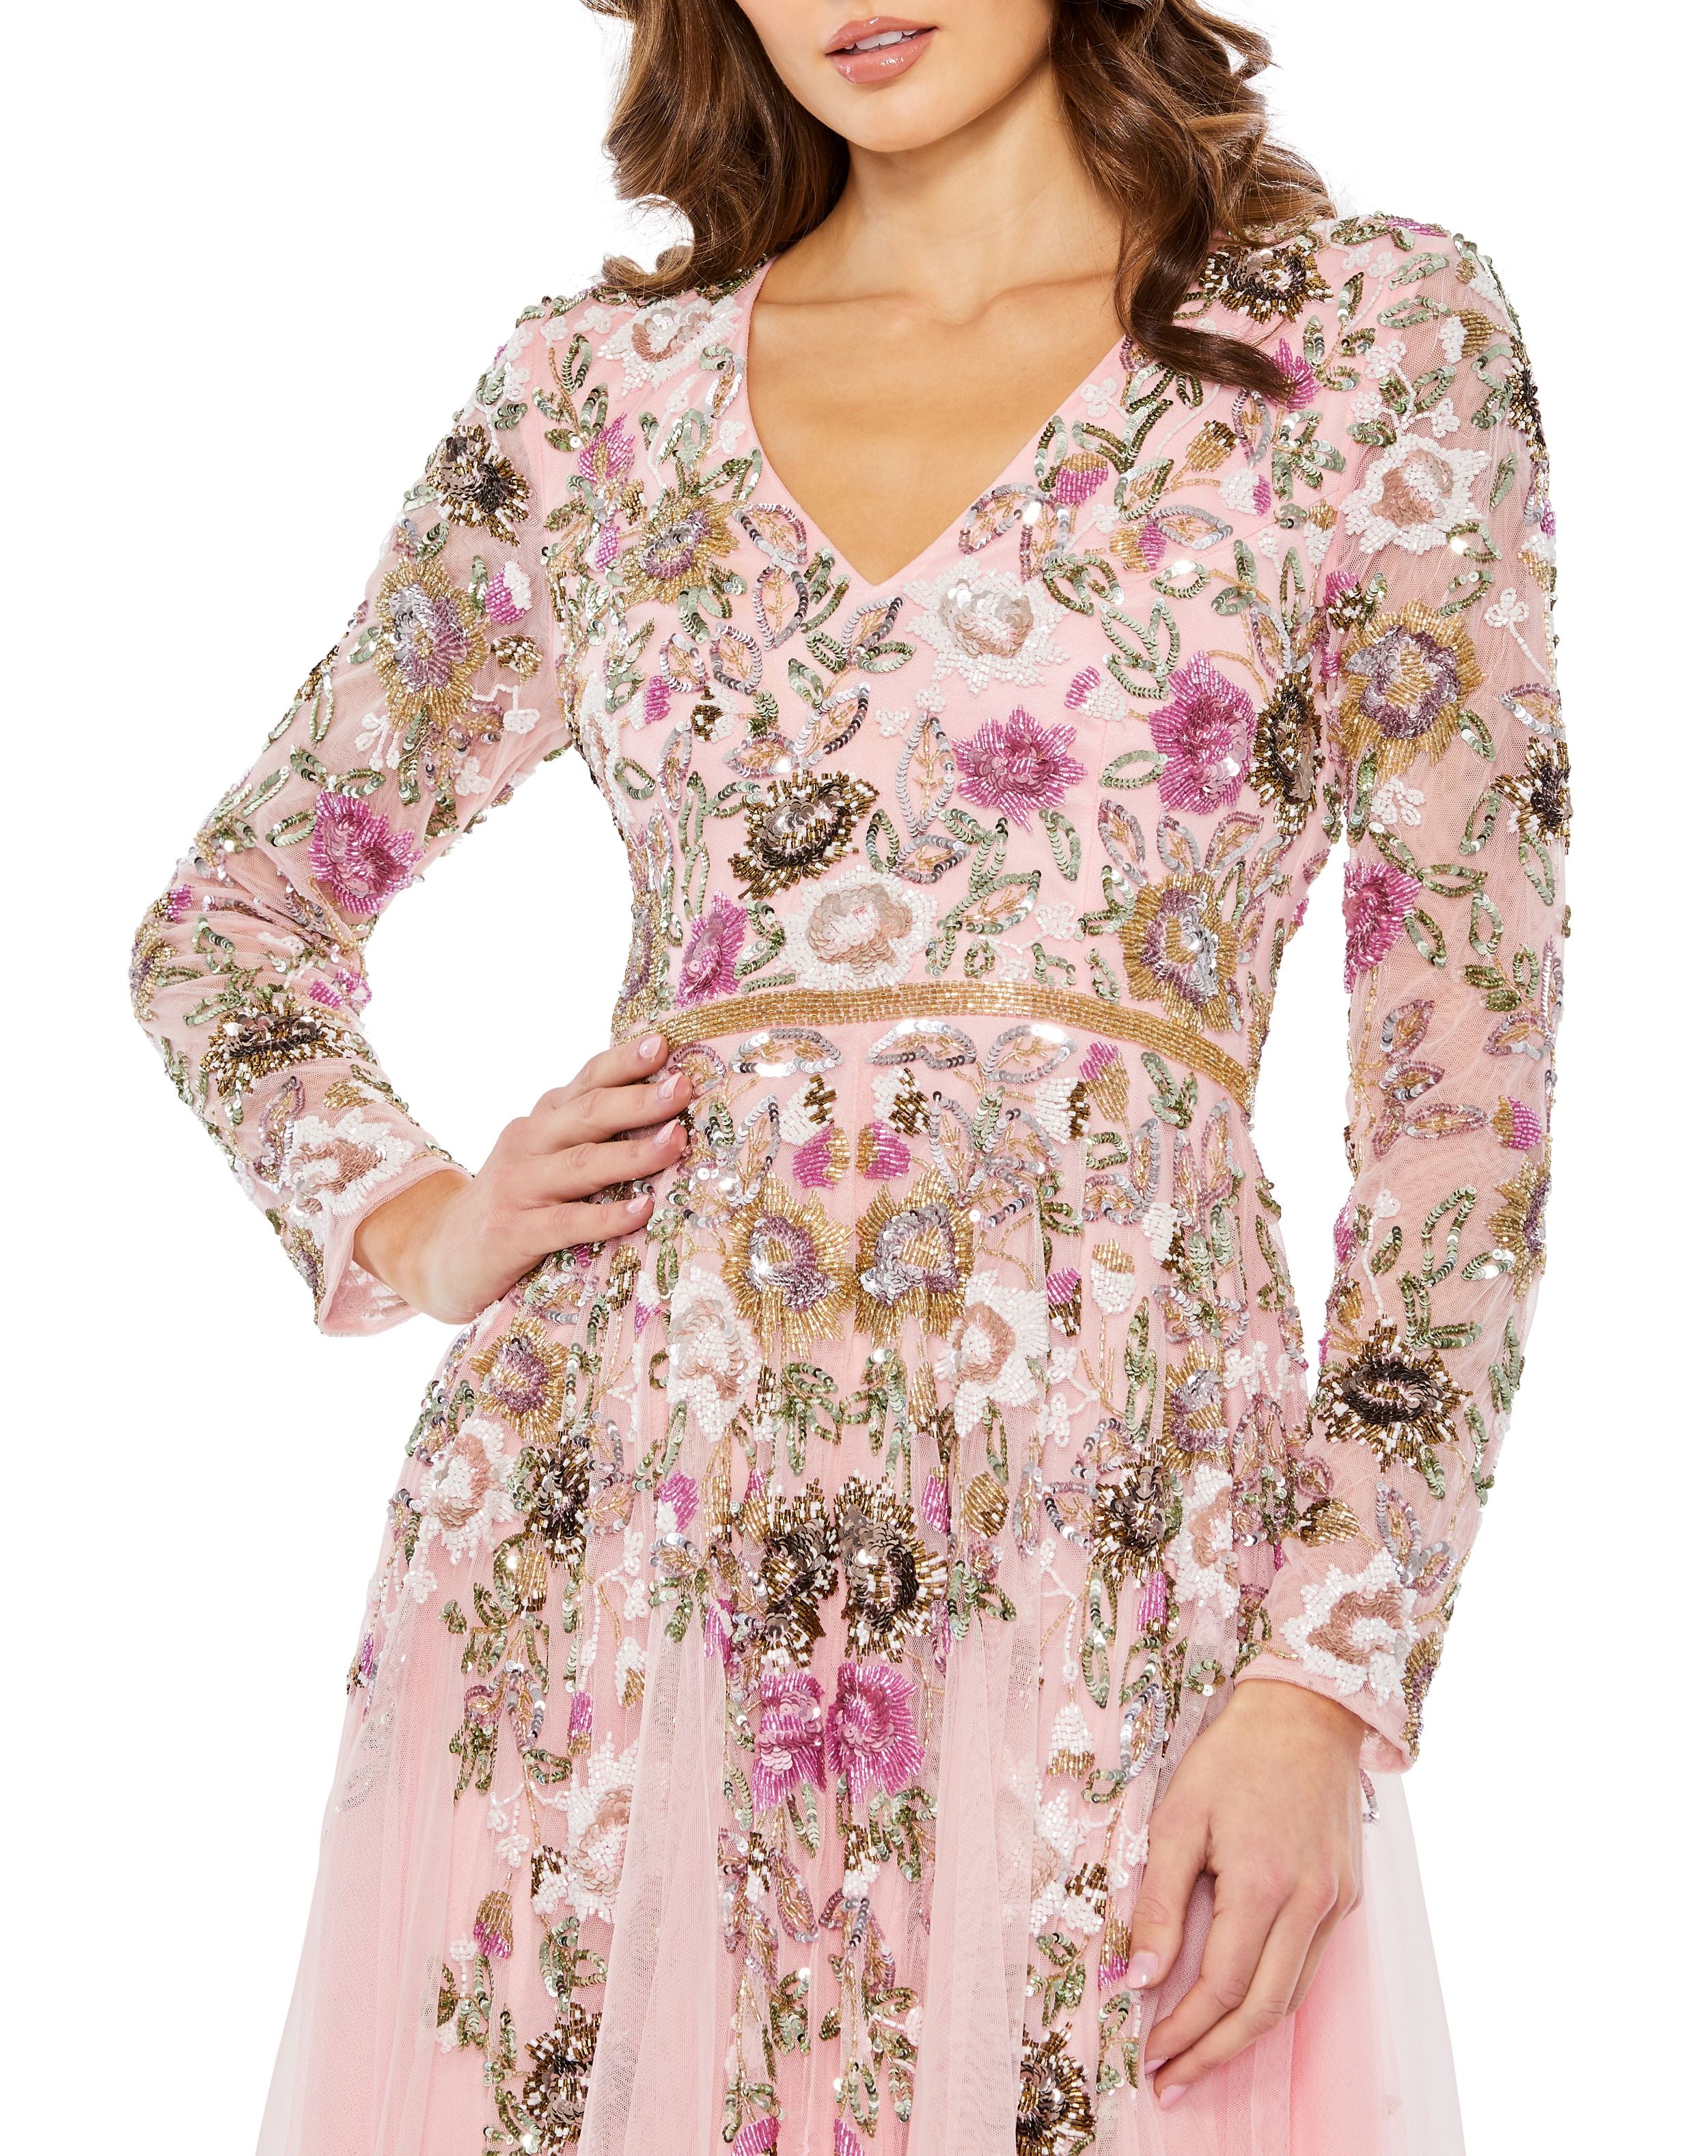 Hand Embellished Floral V Neck Long Sleeve Dress – Mac Duggal